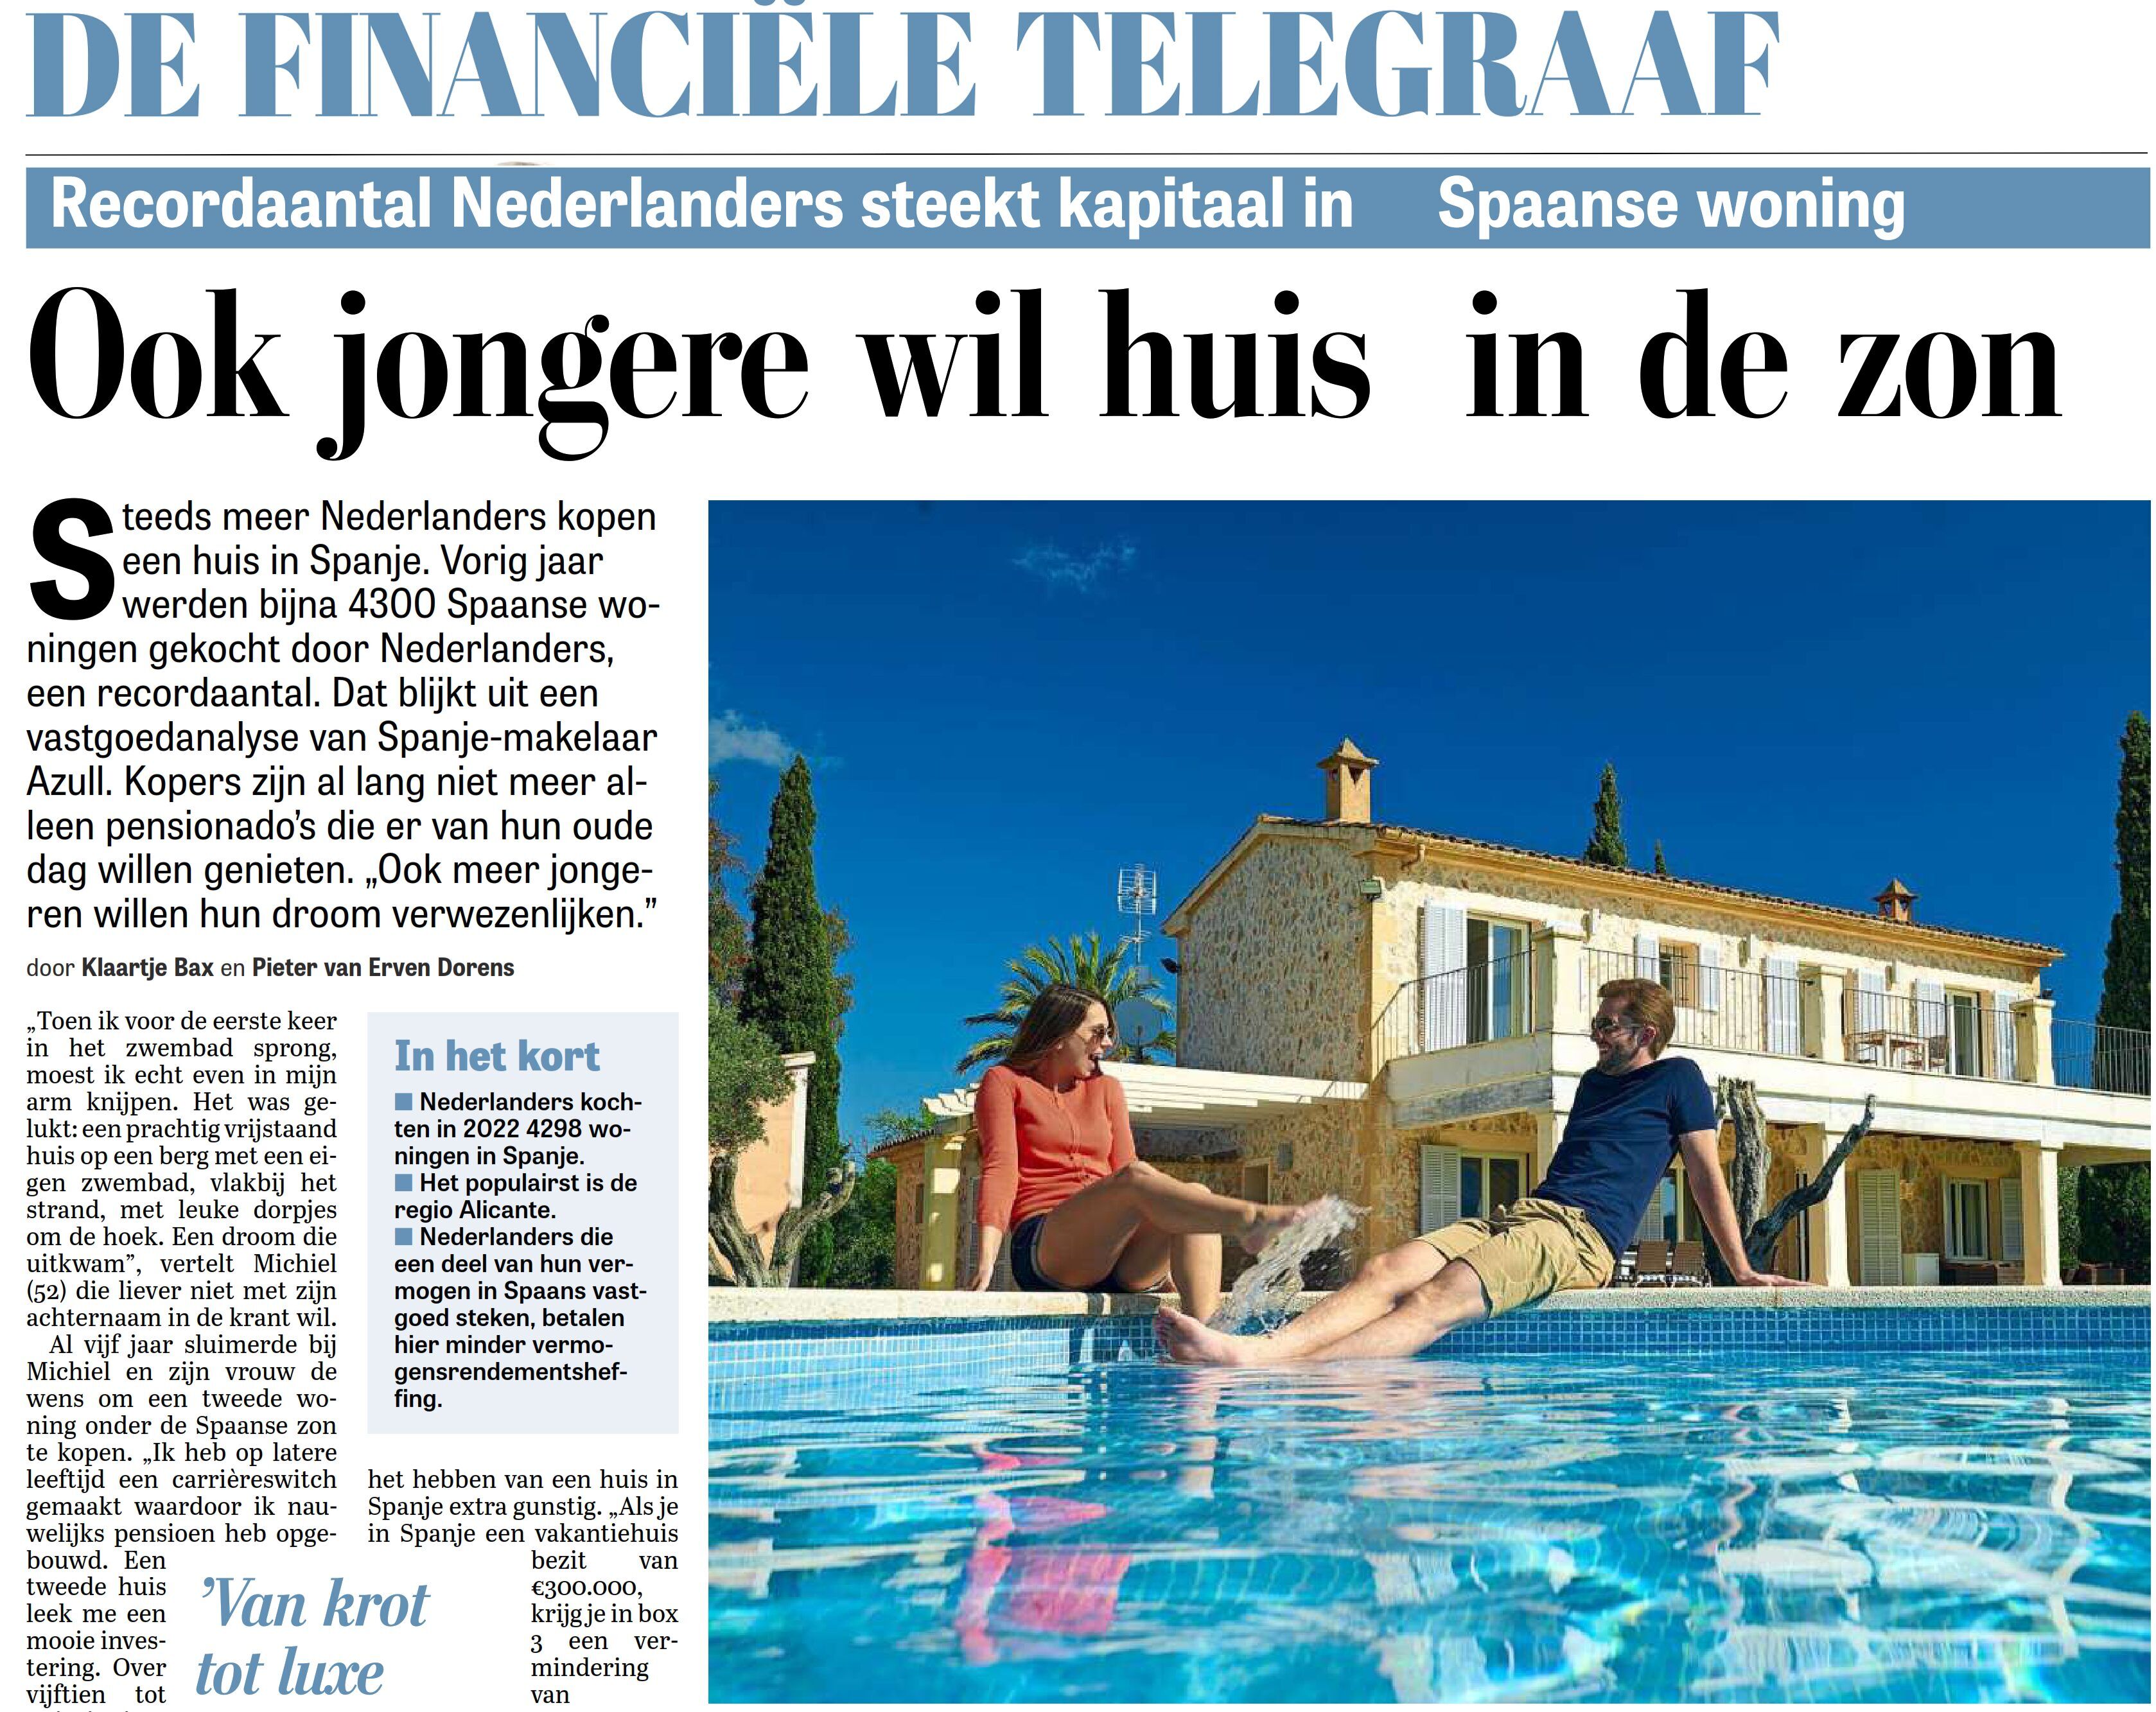 De Telegraaf 27-05-2023 - Recordaantal Nederlanders steekt kapitaal in Spaanse woning.